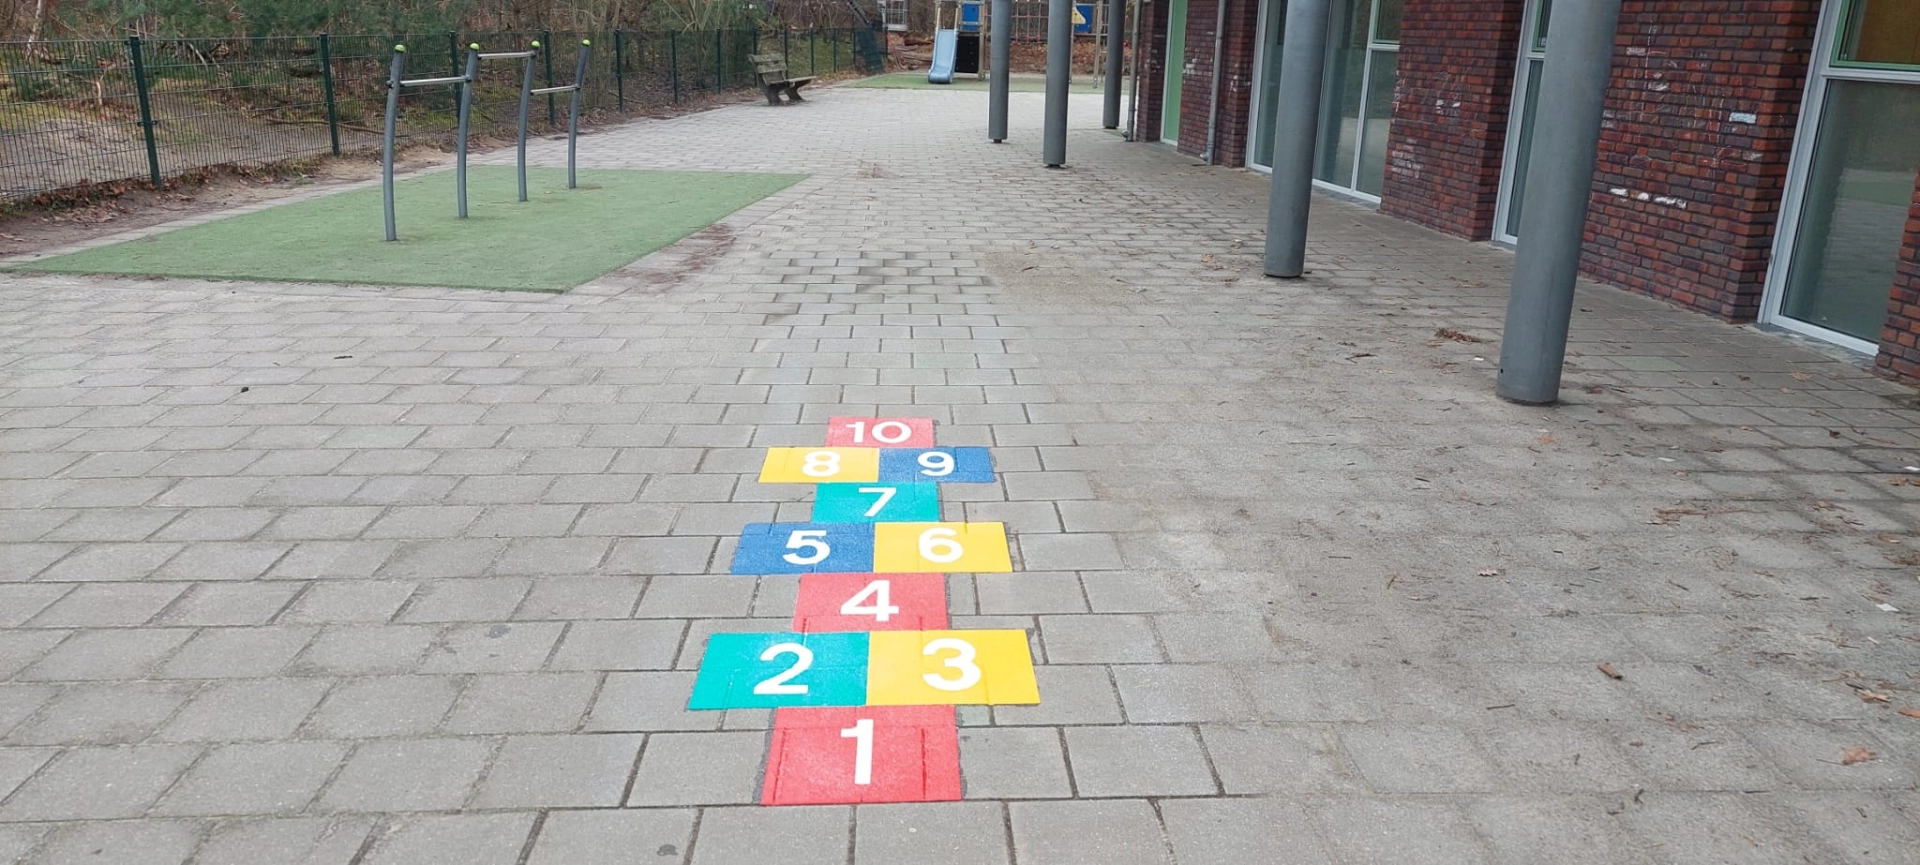 Schoolplein spel markering - pleinversieringen - hinkelpad - hinkelbaan - 2800 x 800mm